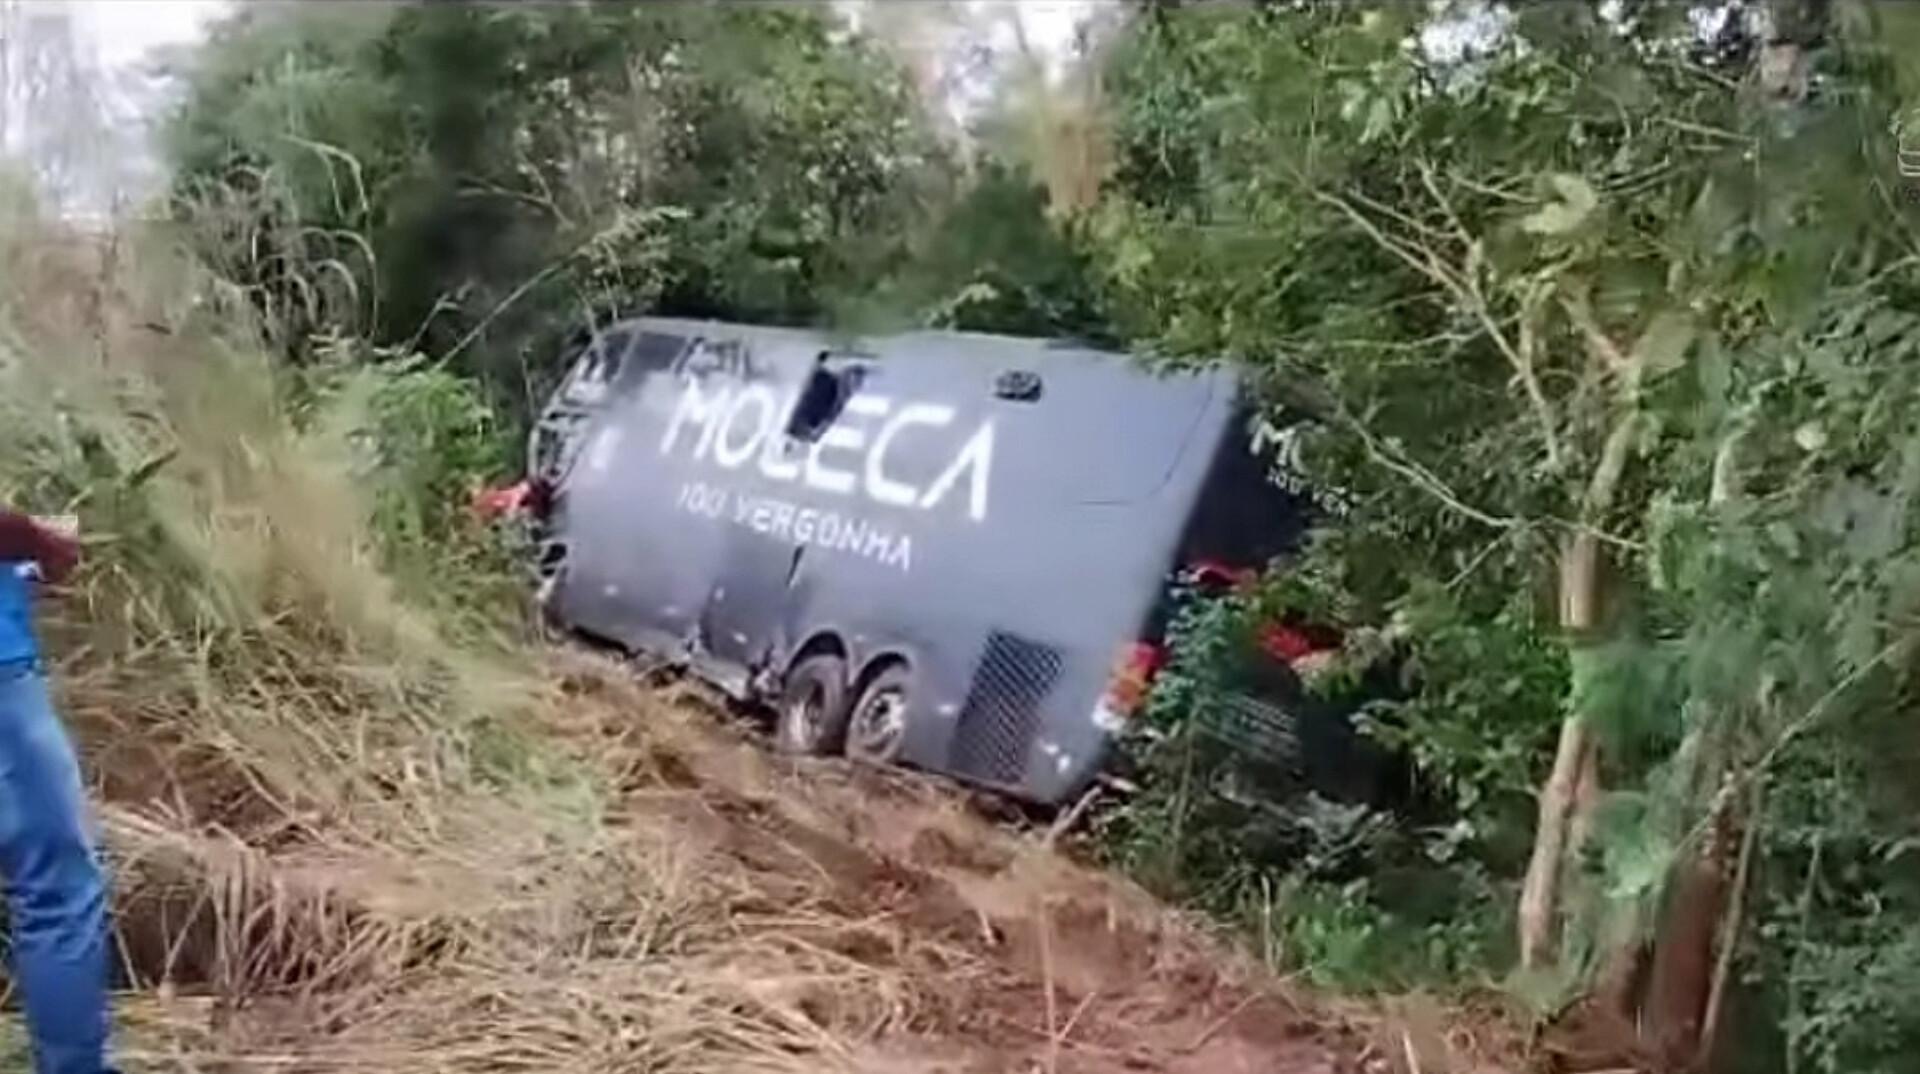 Cantor jequieense está entre as vítimas do acidente com ônibus da Banda Moleca 100 Vergonha